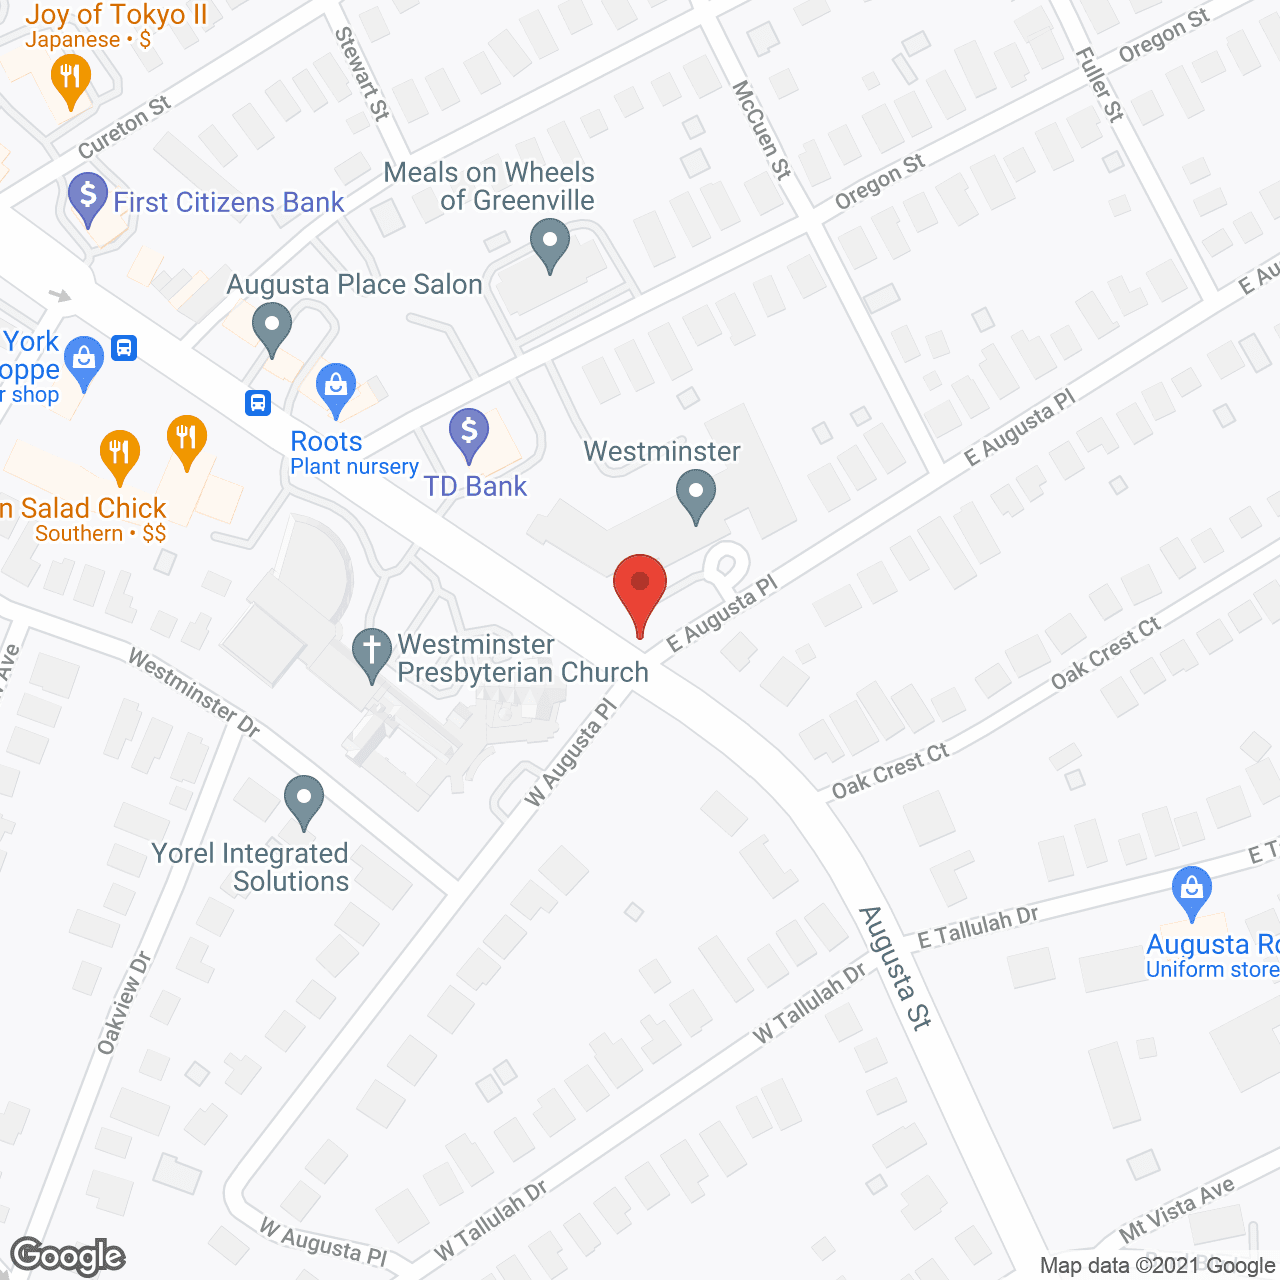 TerraBella Greenville in google map